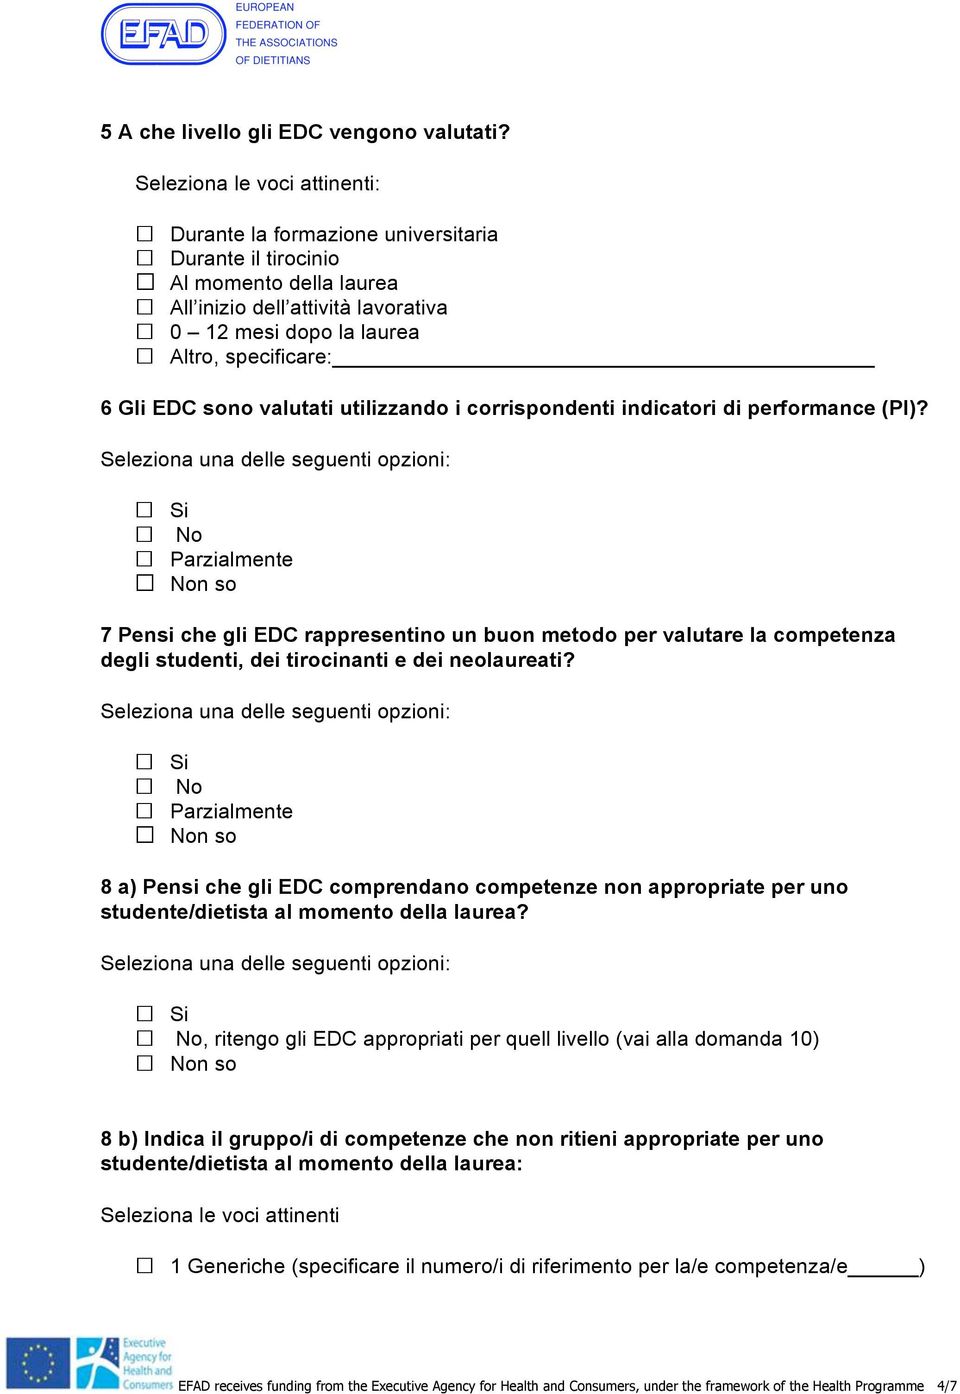 EDC sono valutati utilizzando i corrispondenti indicatori di performance (PI)?